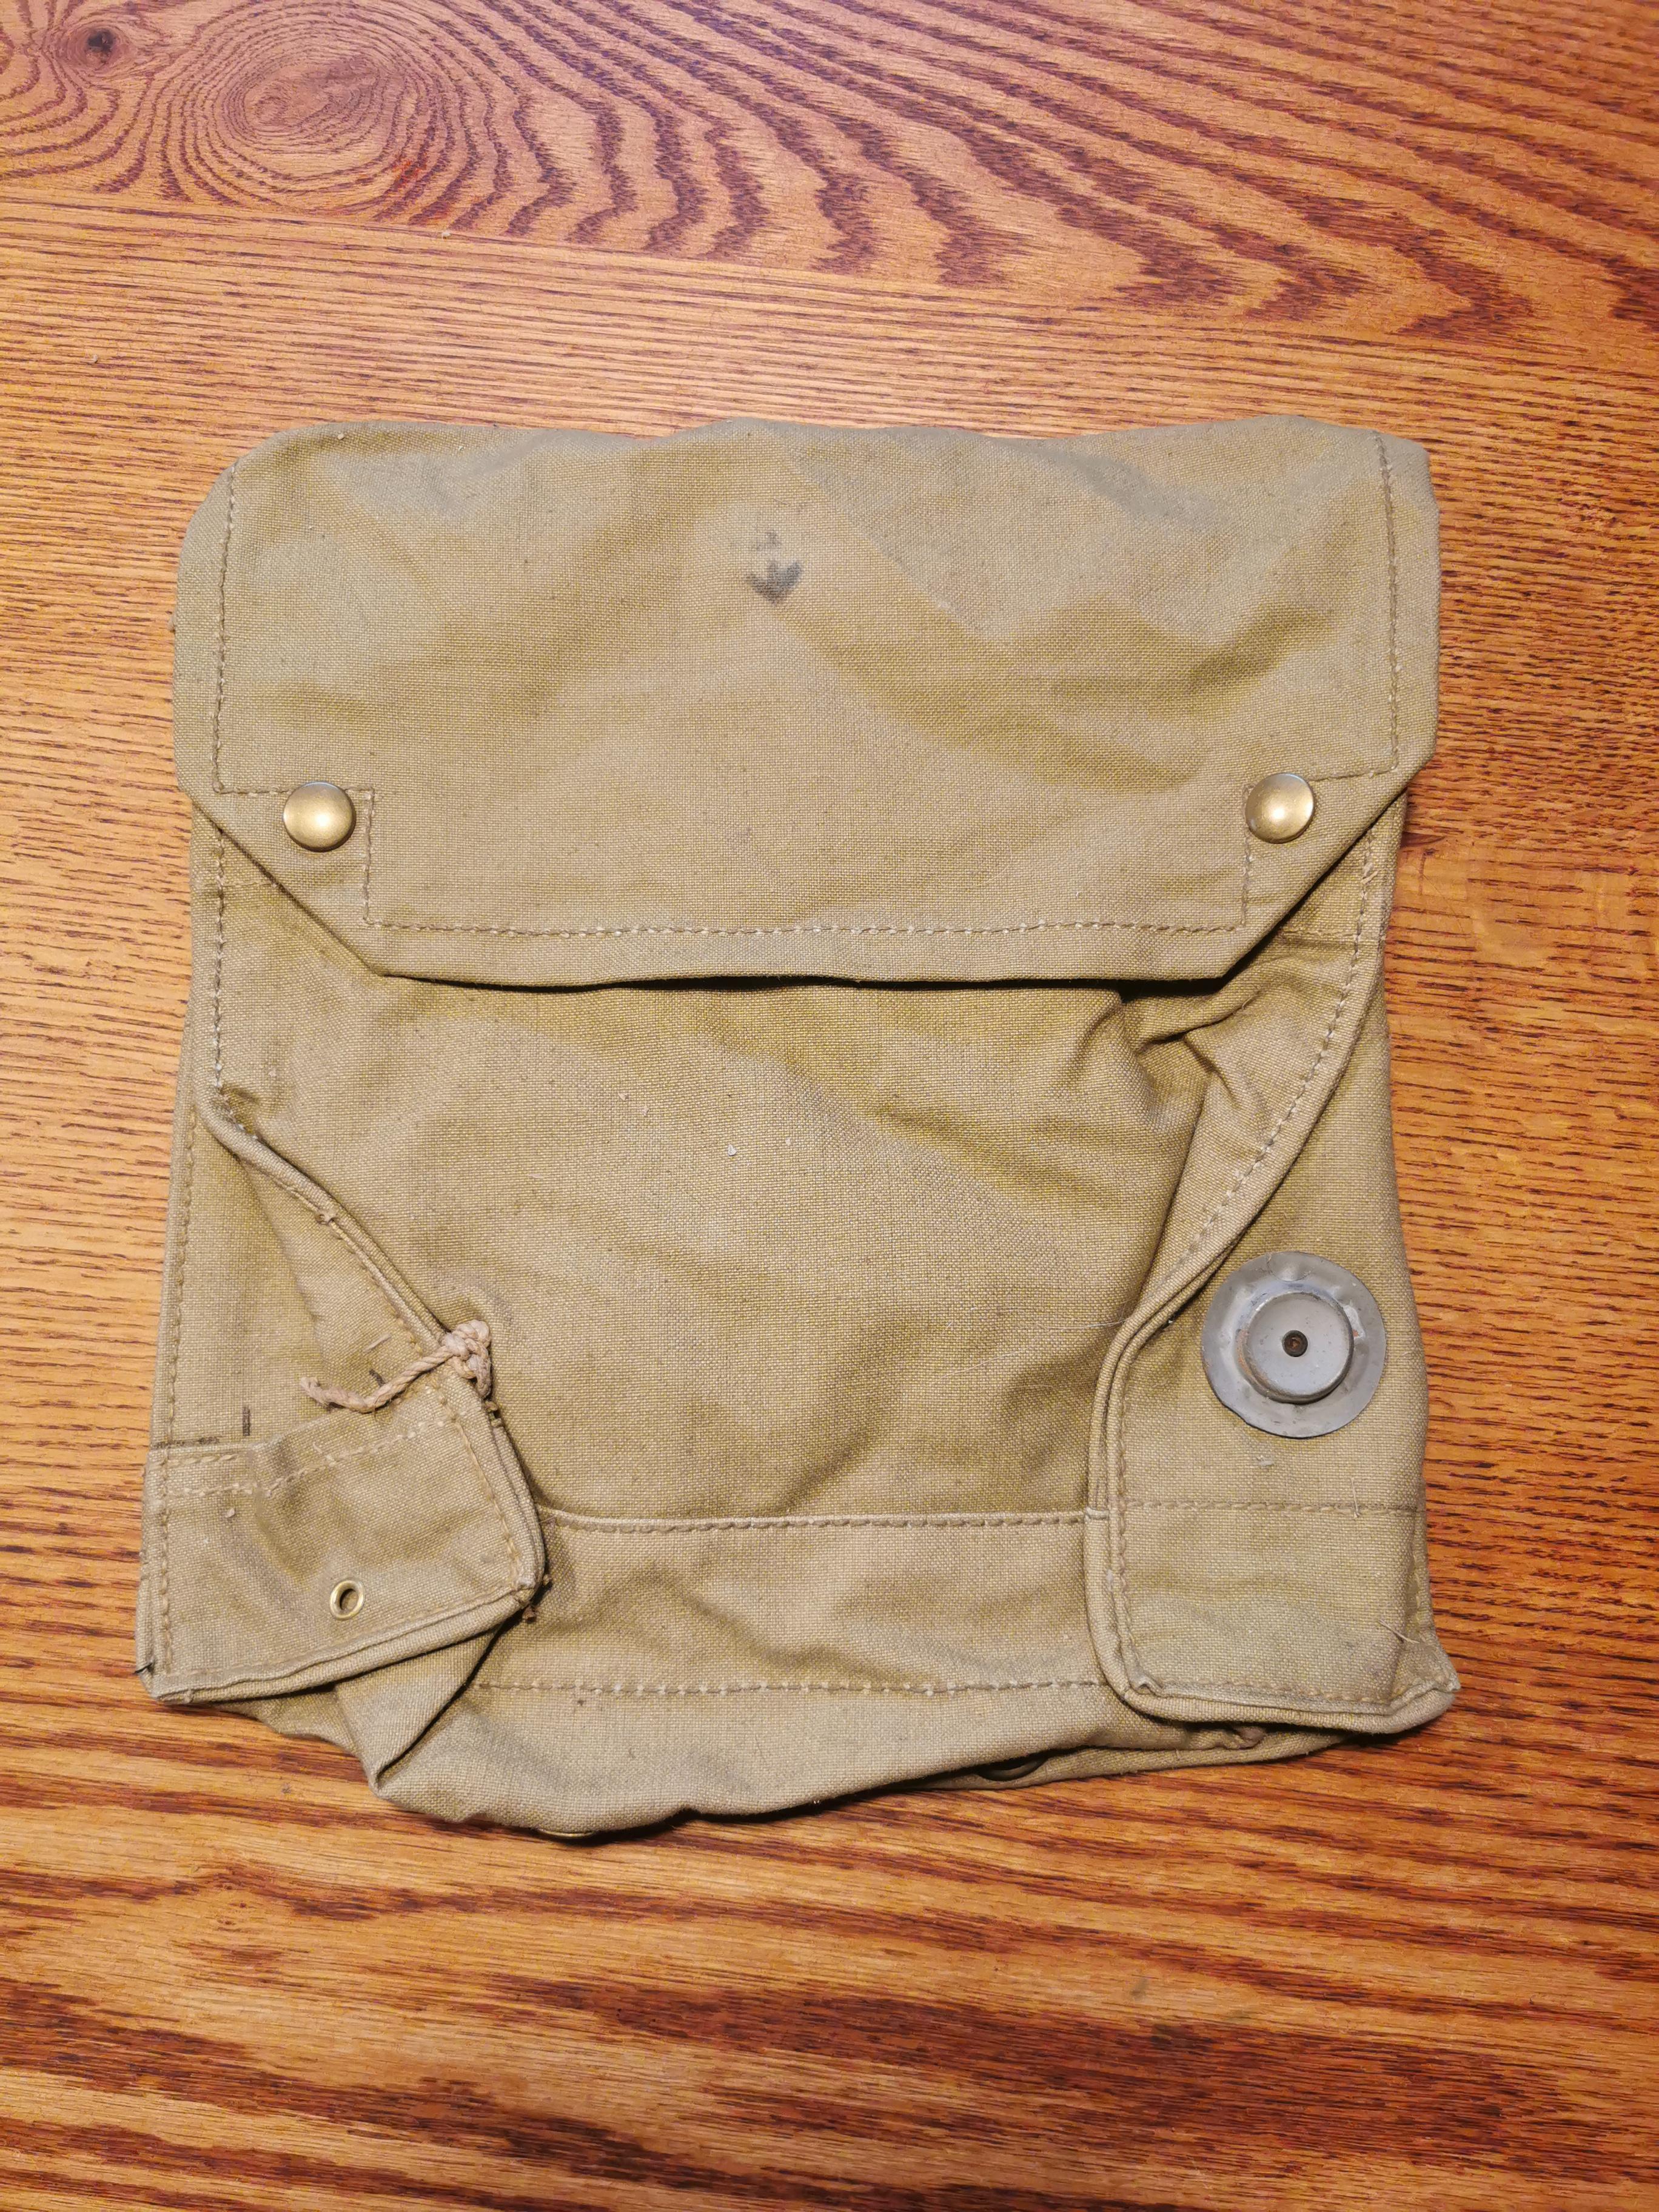 Indiana Jones MK VII Tasche - Original von 1942 - W & G